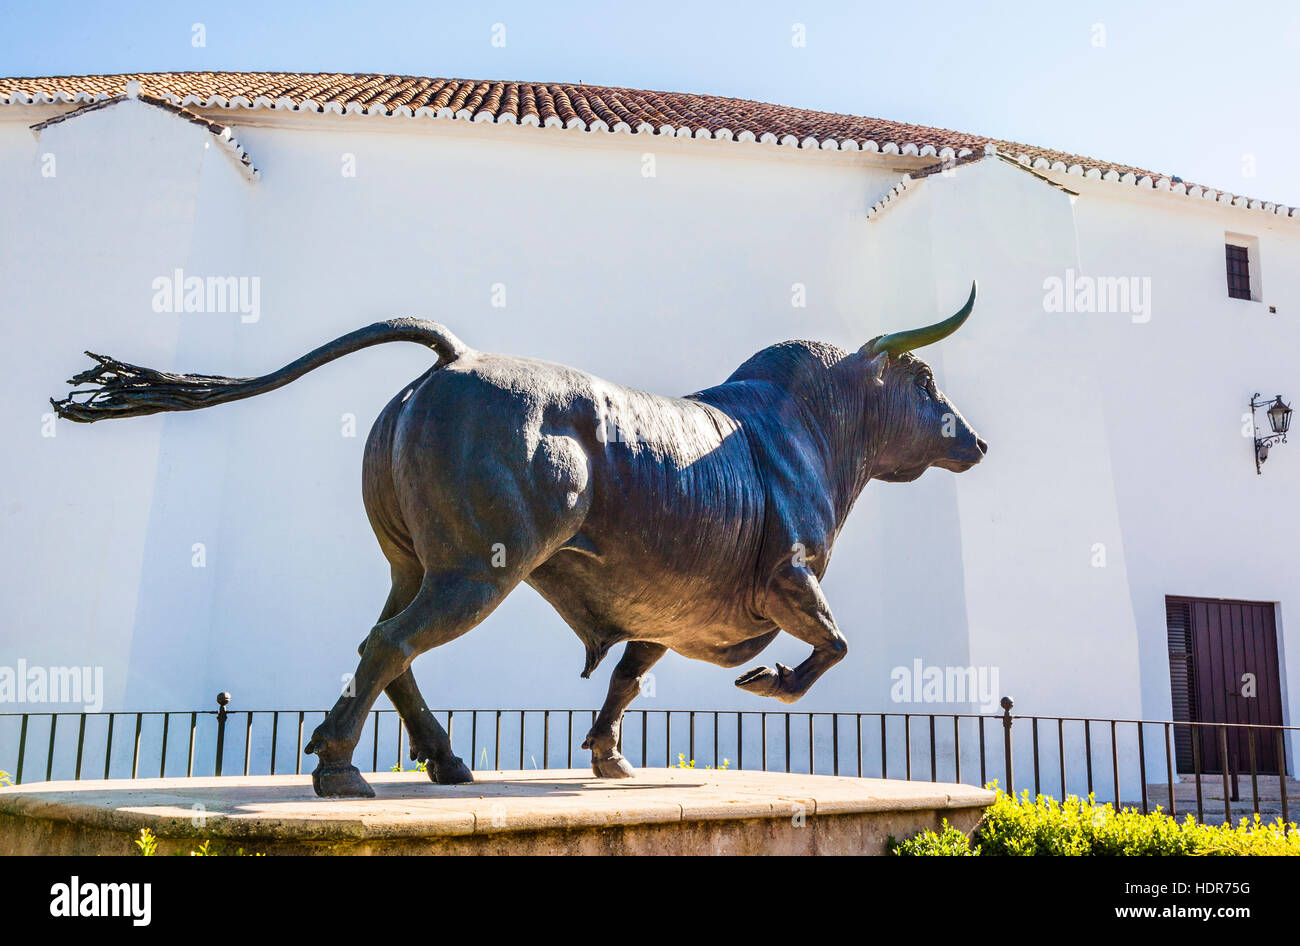 Espagne, Andalousie, province de Malaga, Ronda, bull sculpture à la Plaza de toros de Ronda, les Arènes de Ronda Banque D'Images